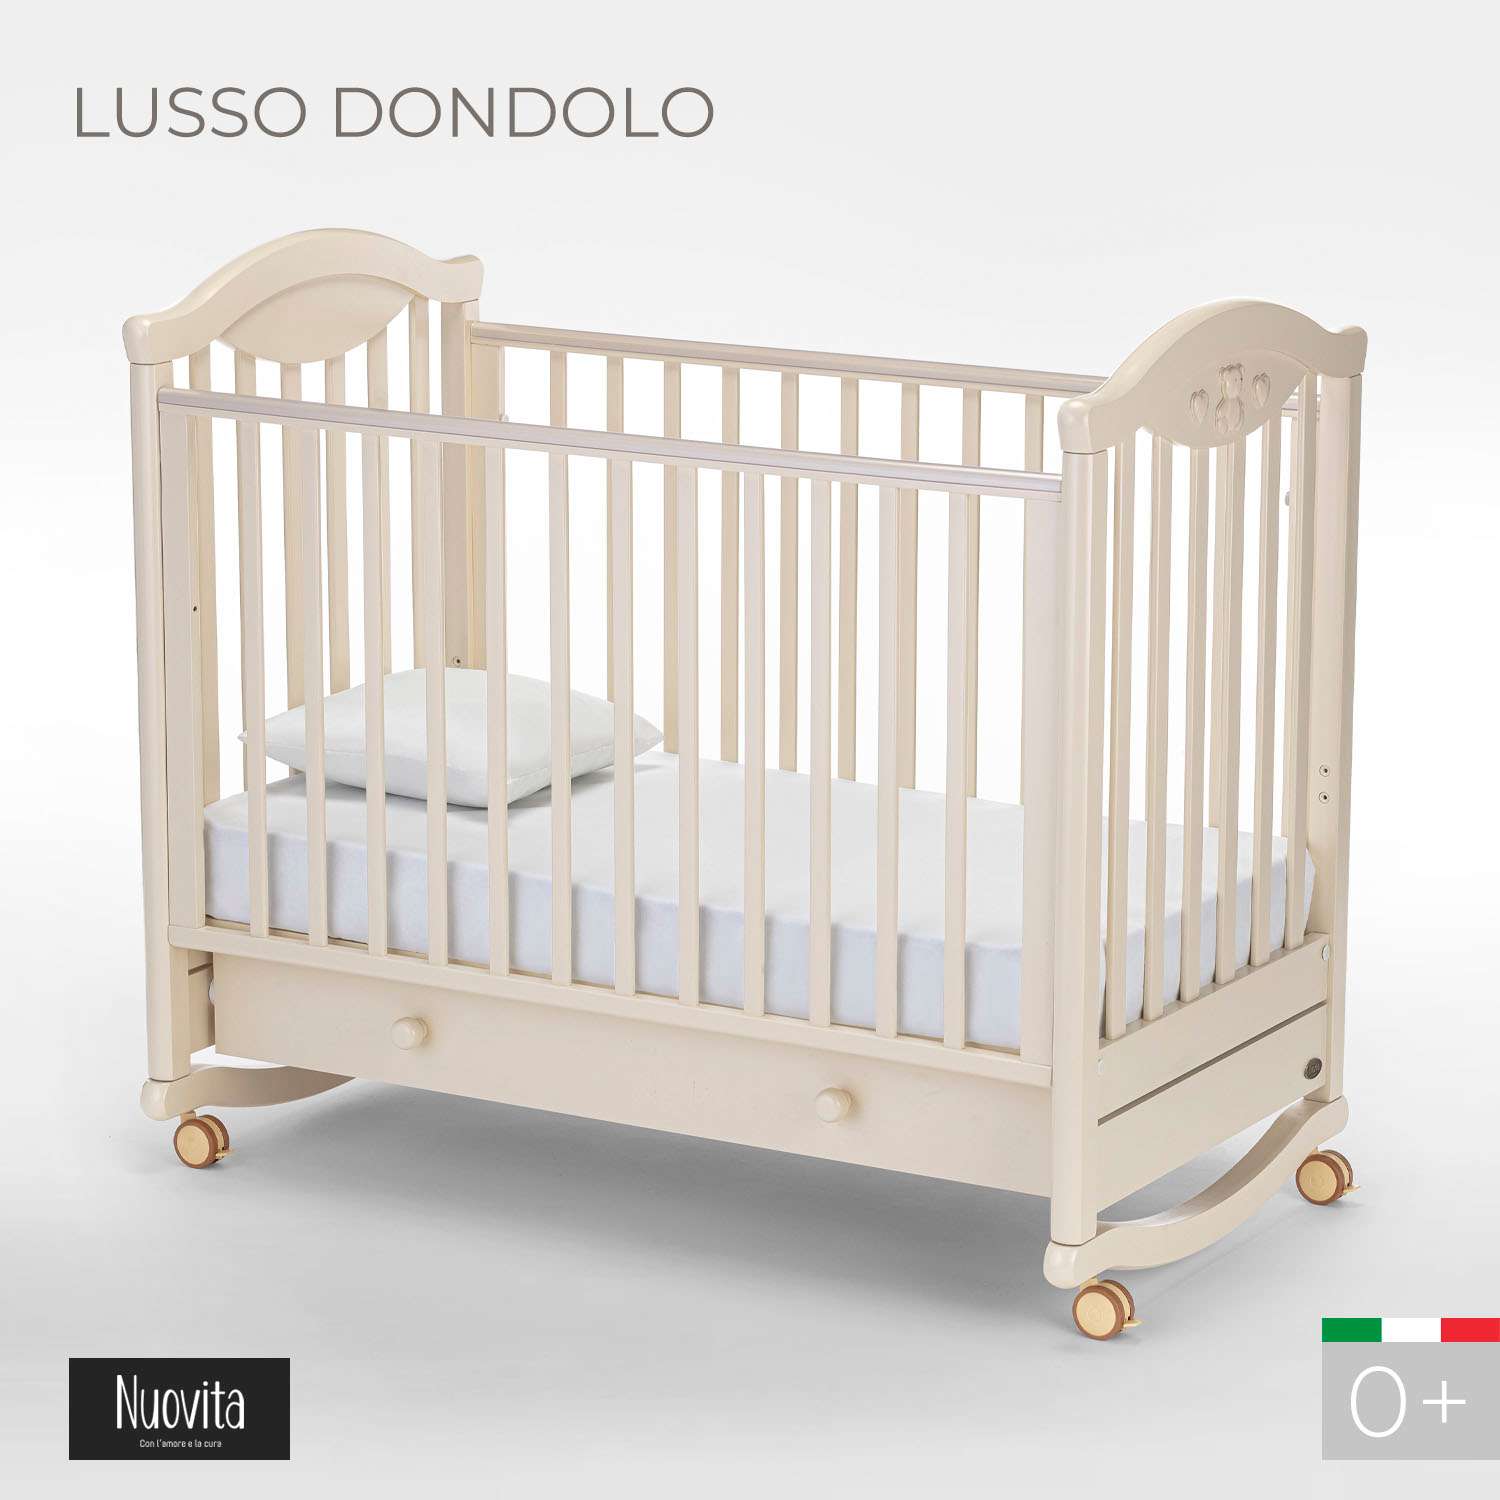 Детская кроватка Nuovita Lusso Dondolo прямоугольная, без маятника (слоновая кость) - фото 2